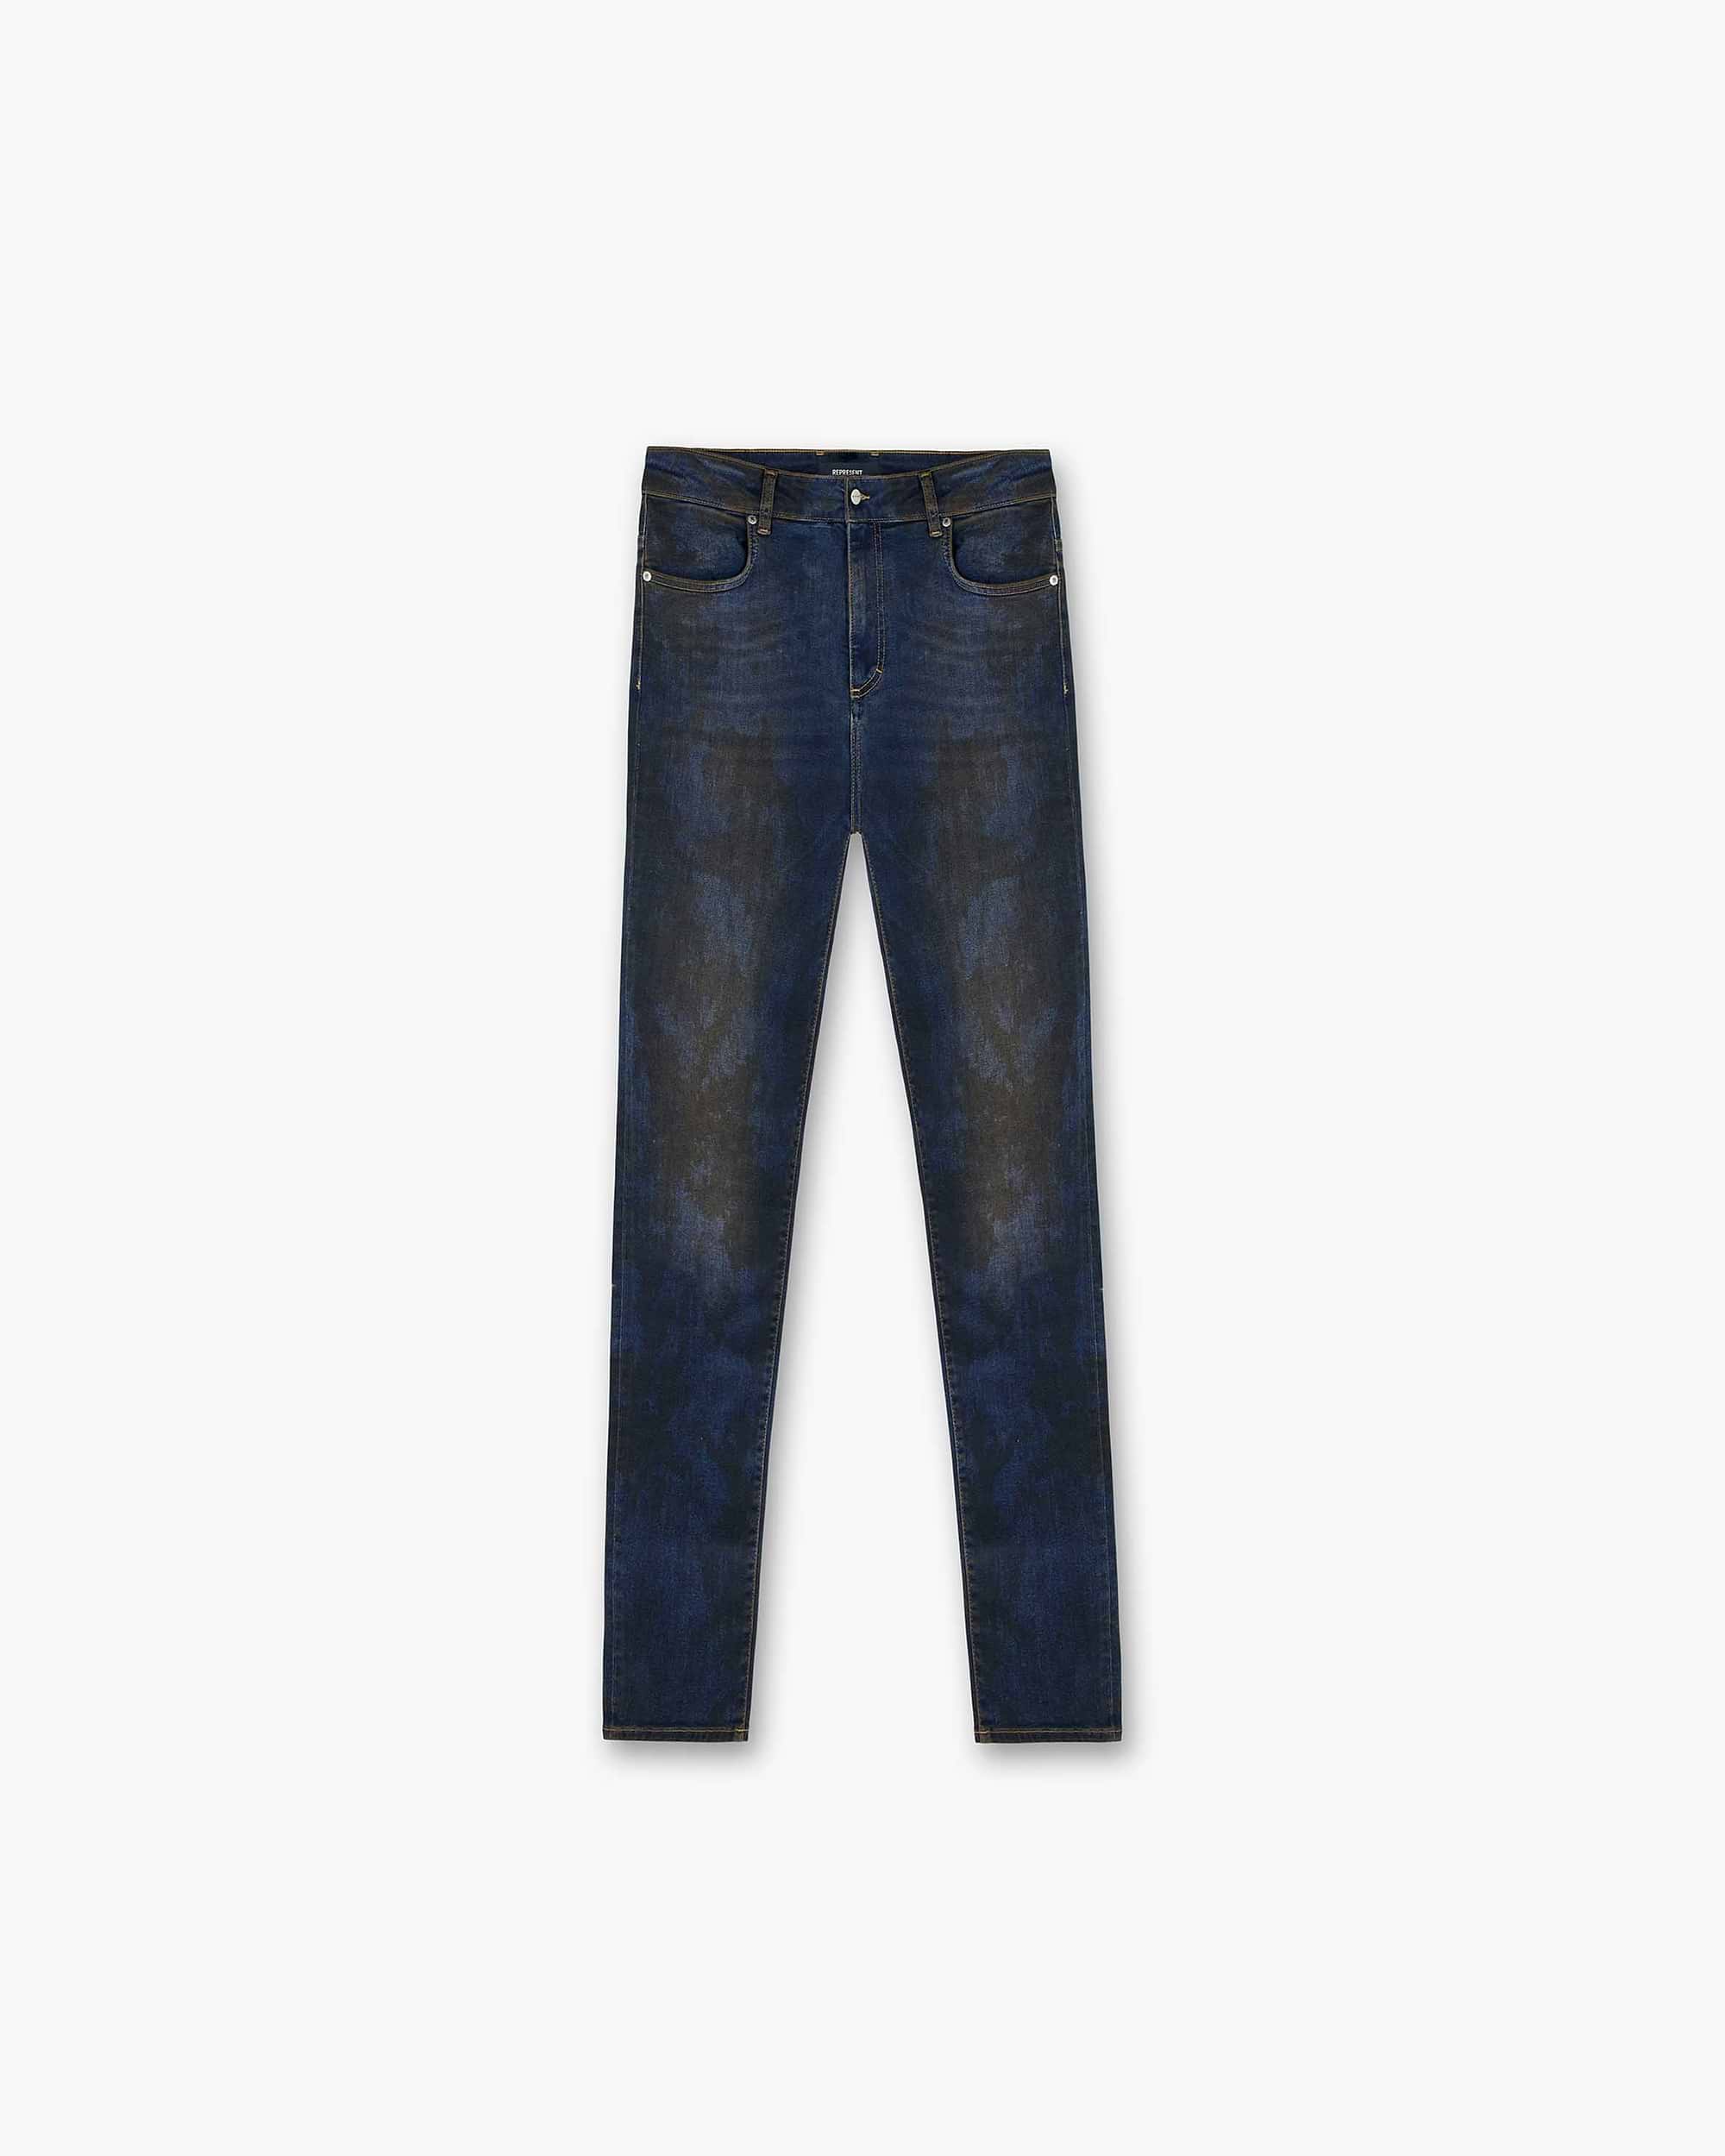 Slim Fit Blue Jeans | Vintage Wash | Represent Clo